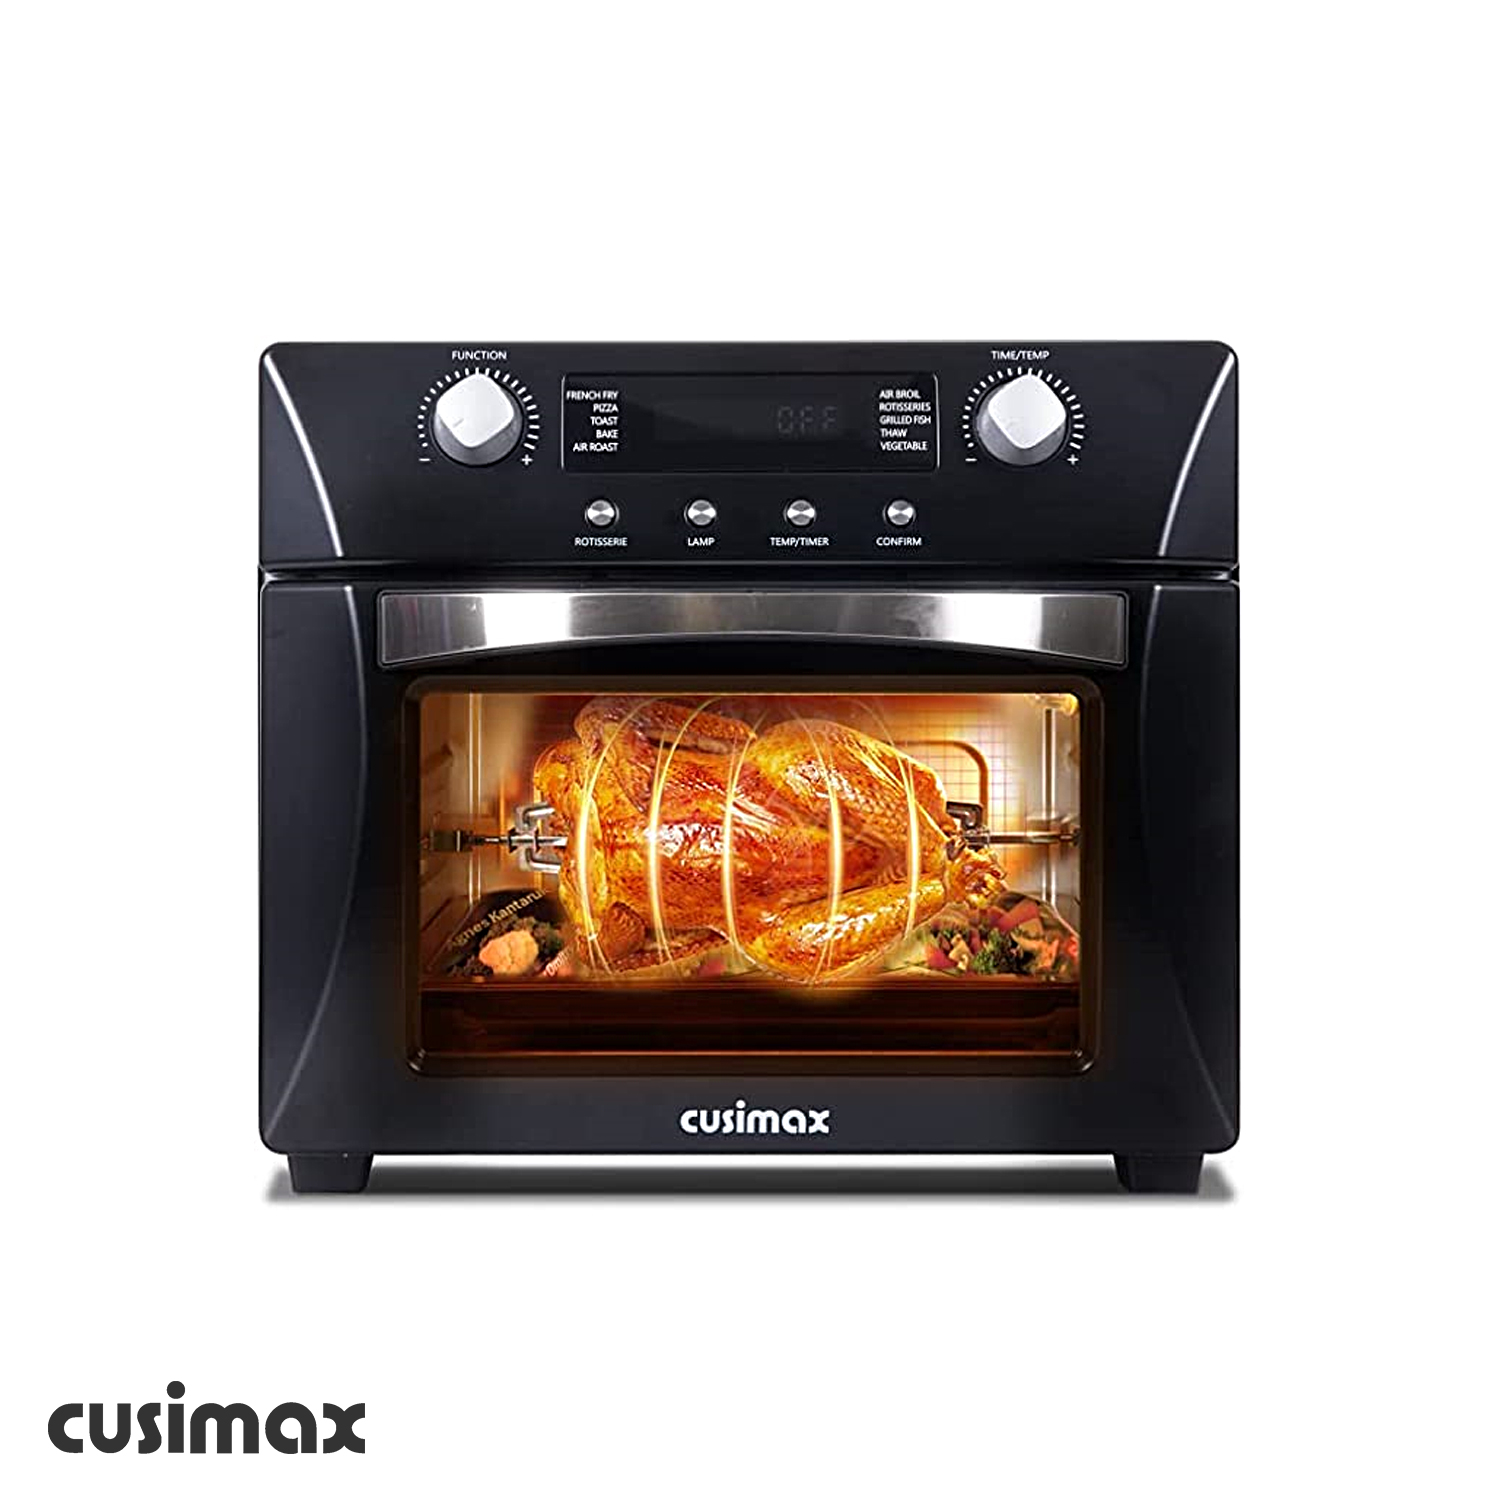 Cusimax 24.3QT 10 in 1 Black Air Fryer Oven